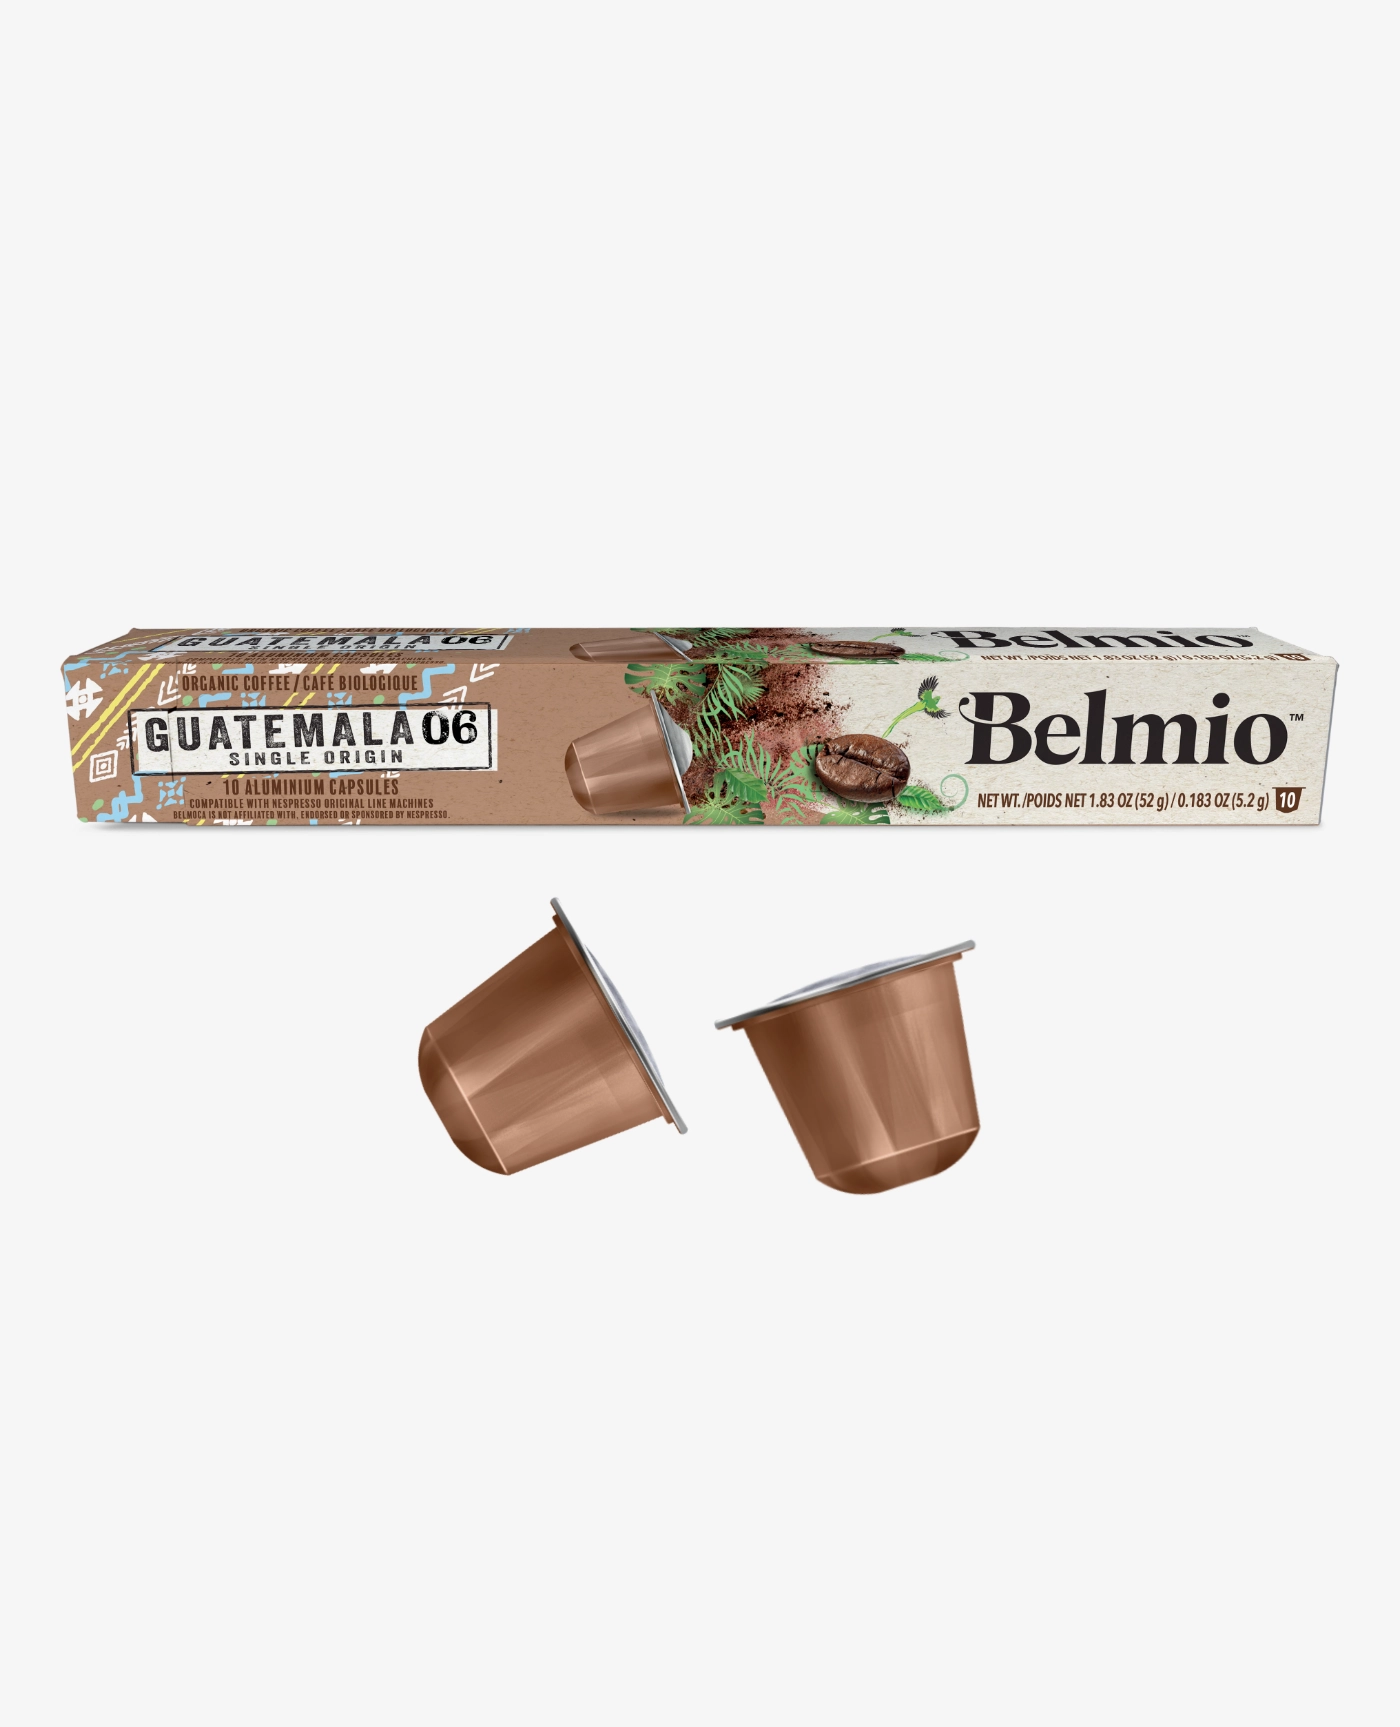 Belmio Guatemala Organic Kapsułki Nespresso